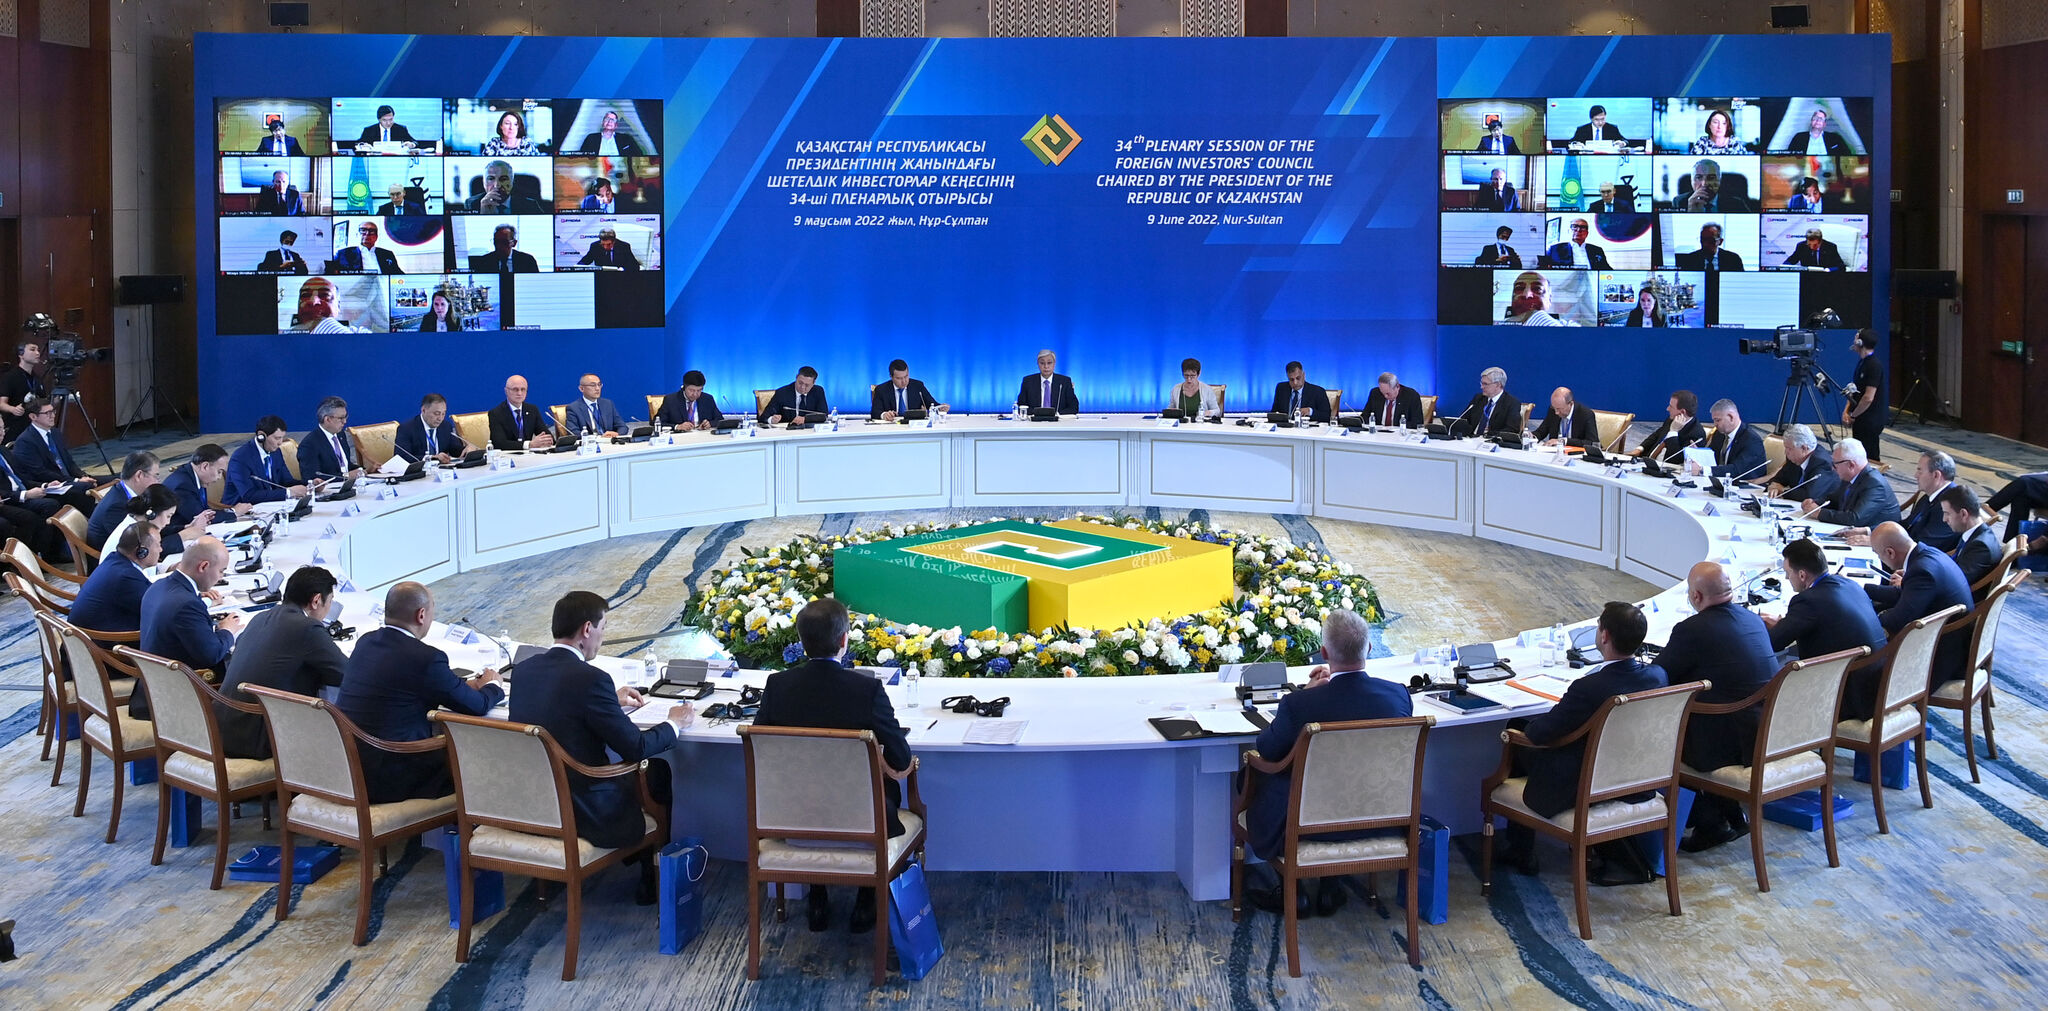 Токаев принял участие в 34-м пленарном заседании Совета иностранных инвесторов